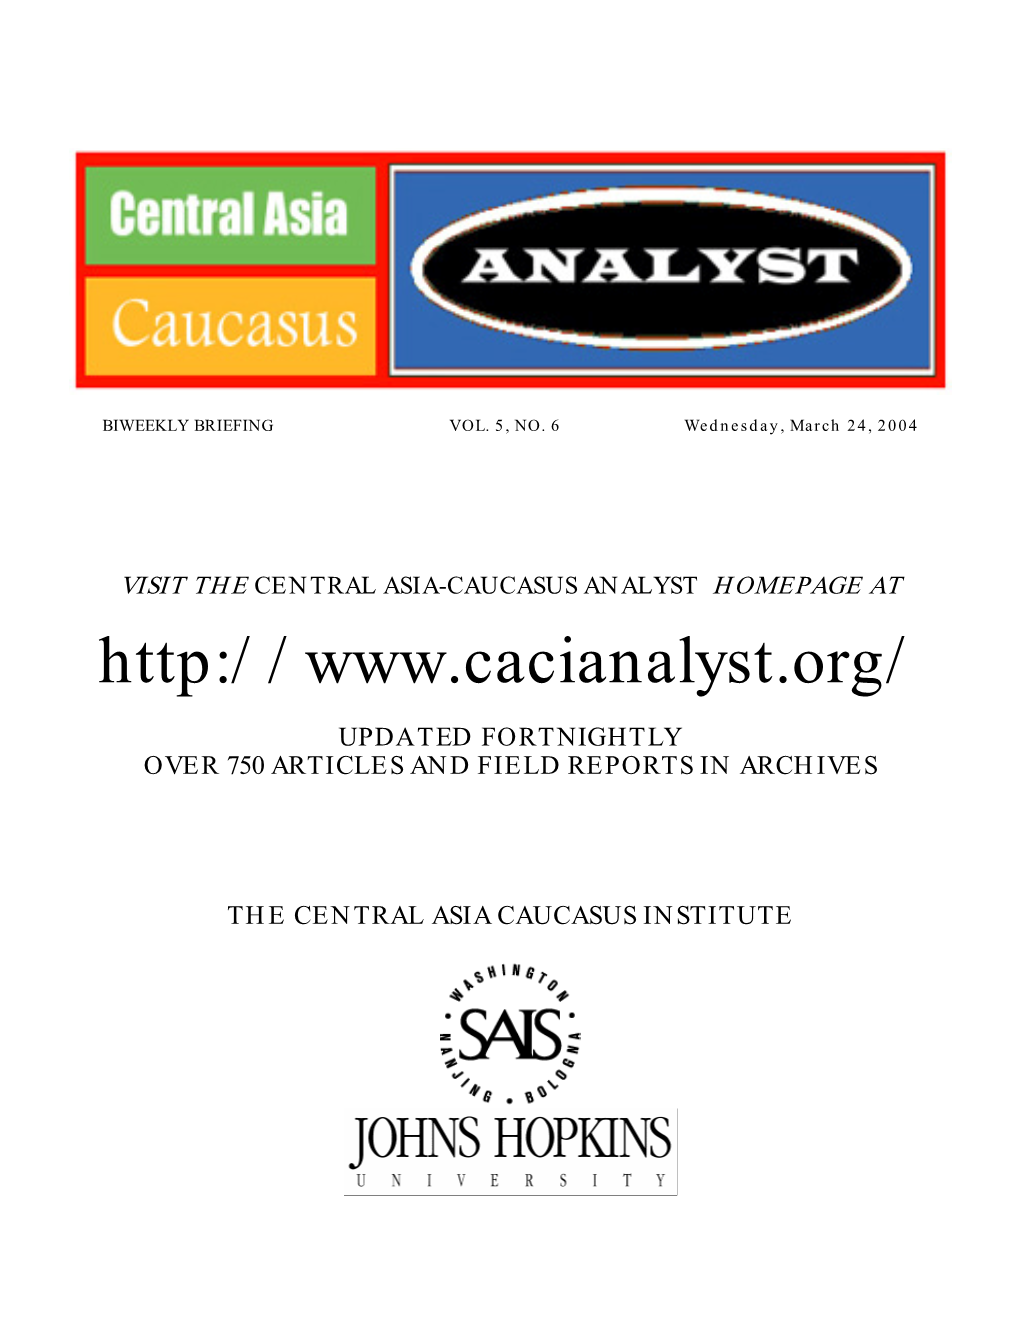 Central Asia-Caucasus Analyst Vol 5, No 6